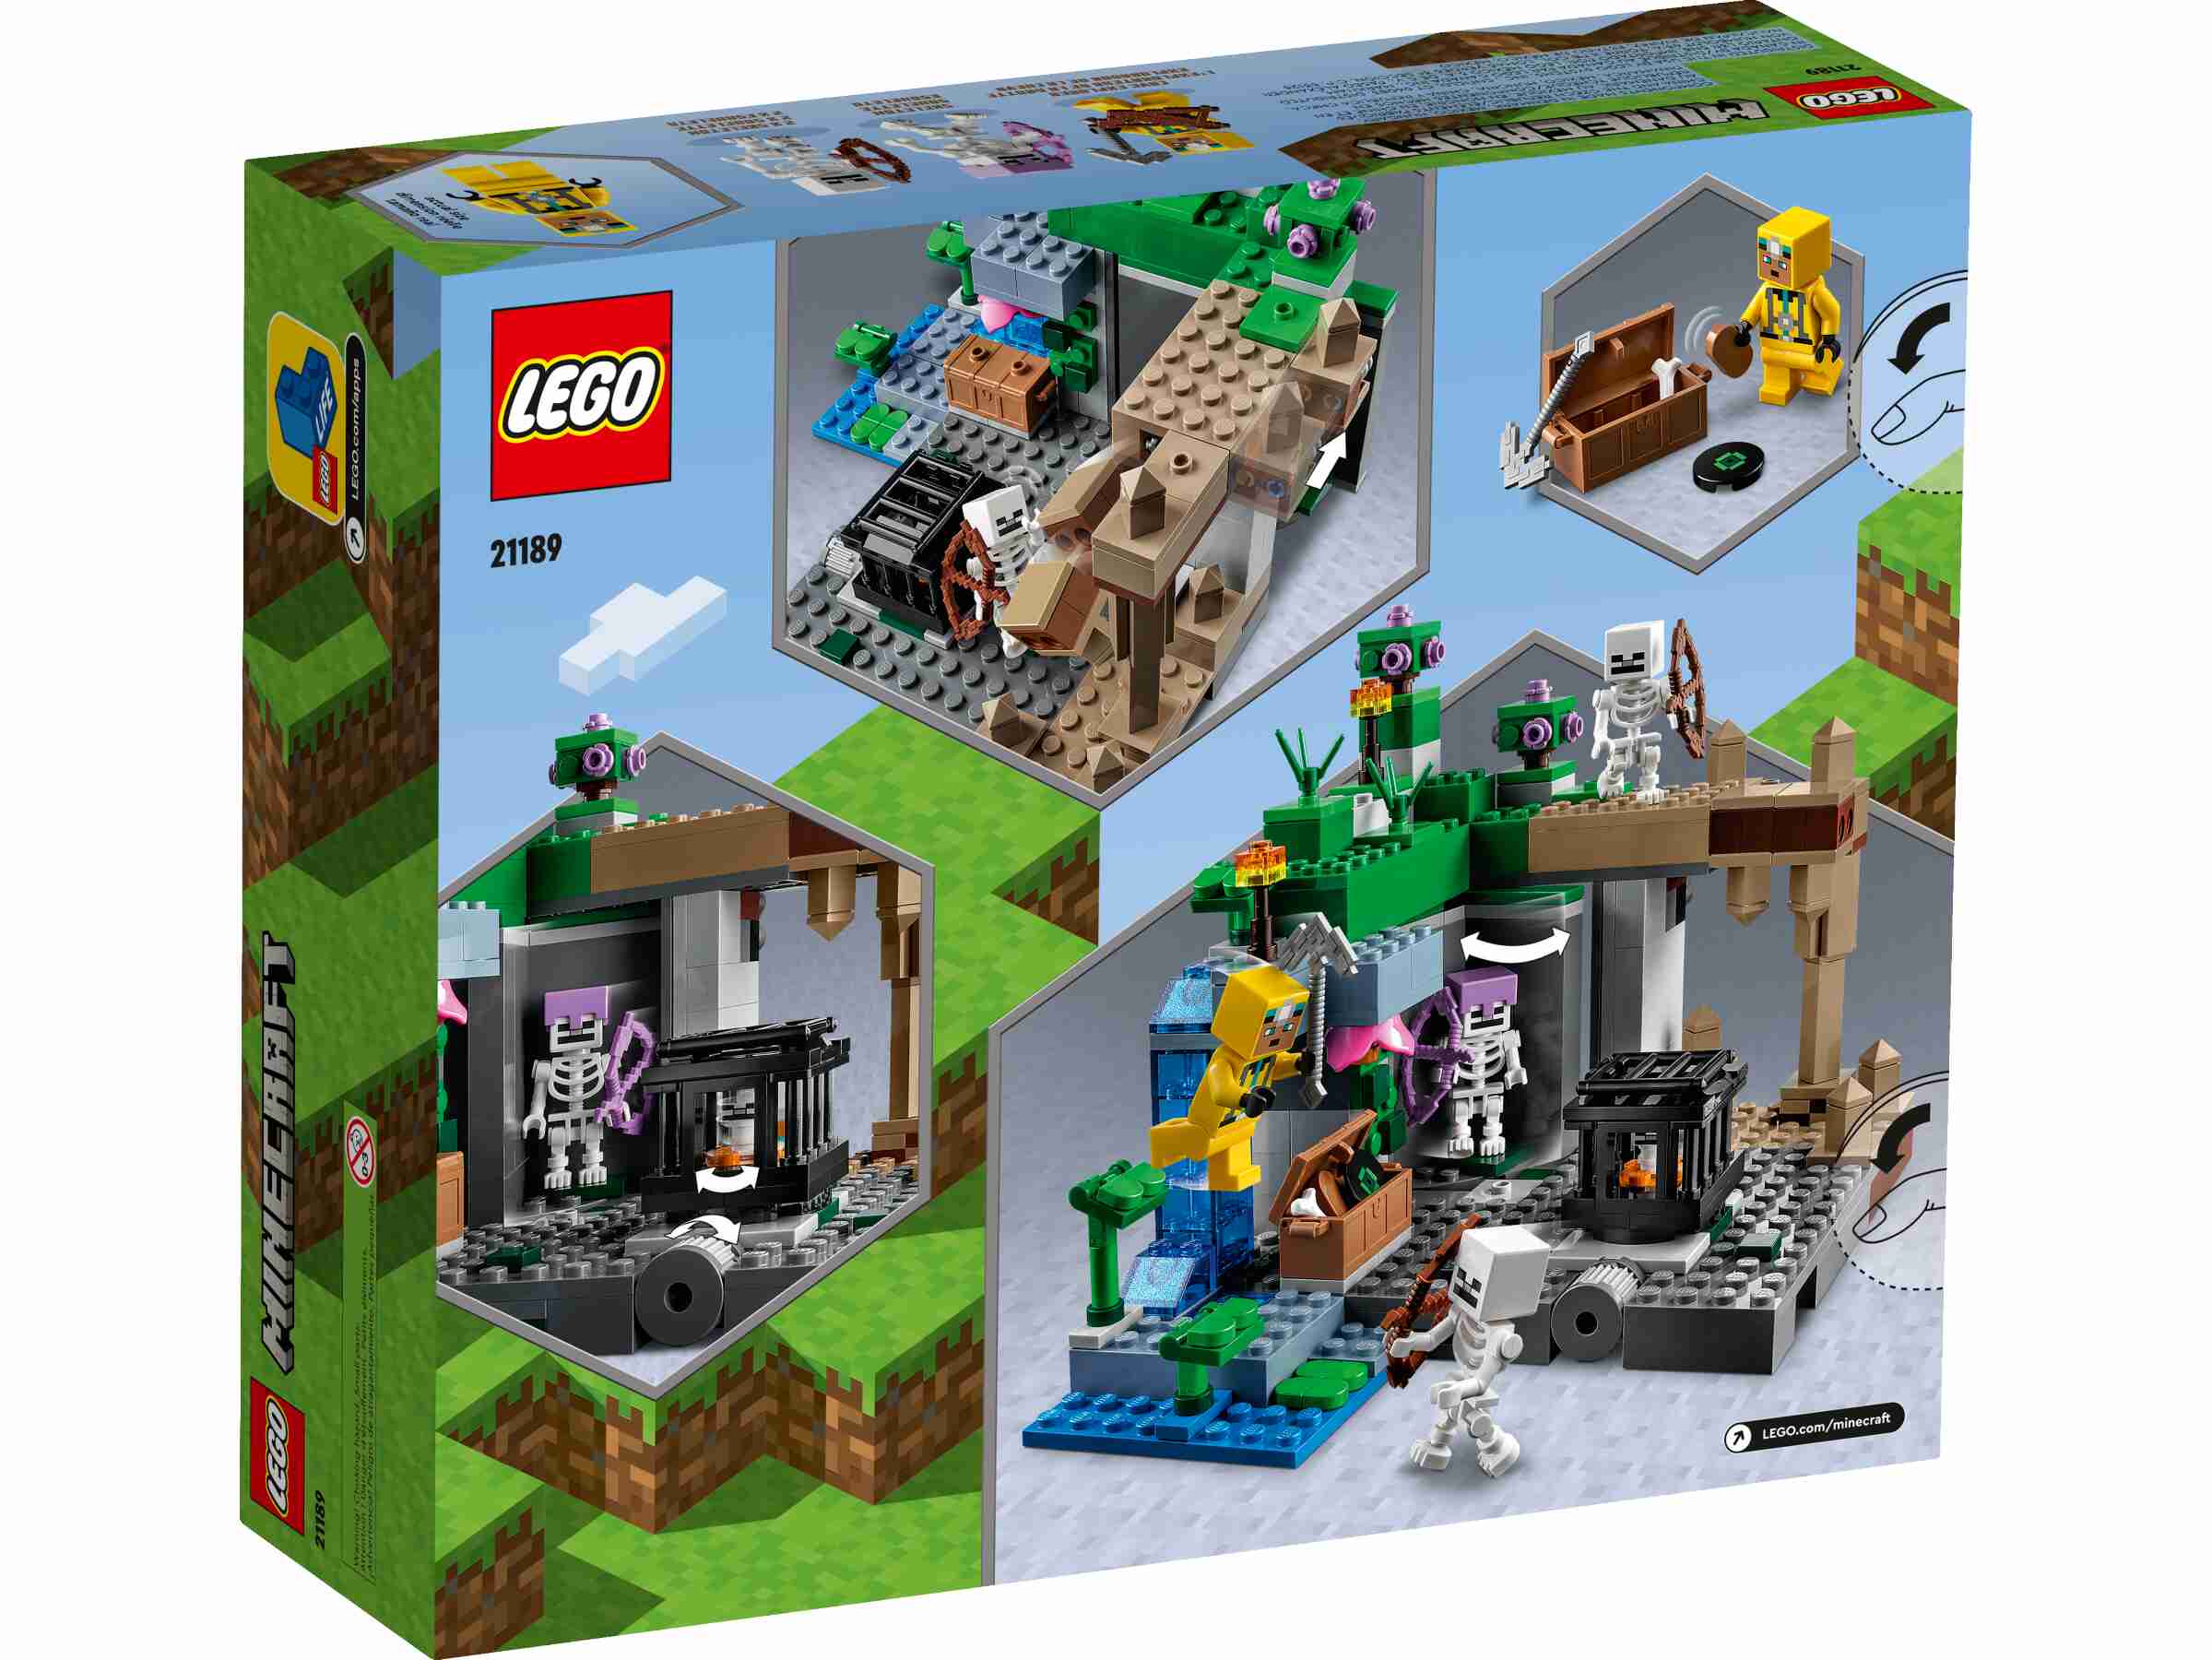 LEGO 21189 Minecraft Das Skelettverlies, Set mit Höhlen, Skelettfiguren